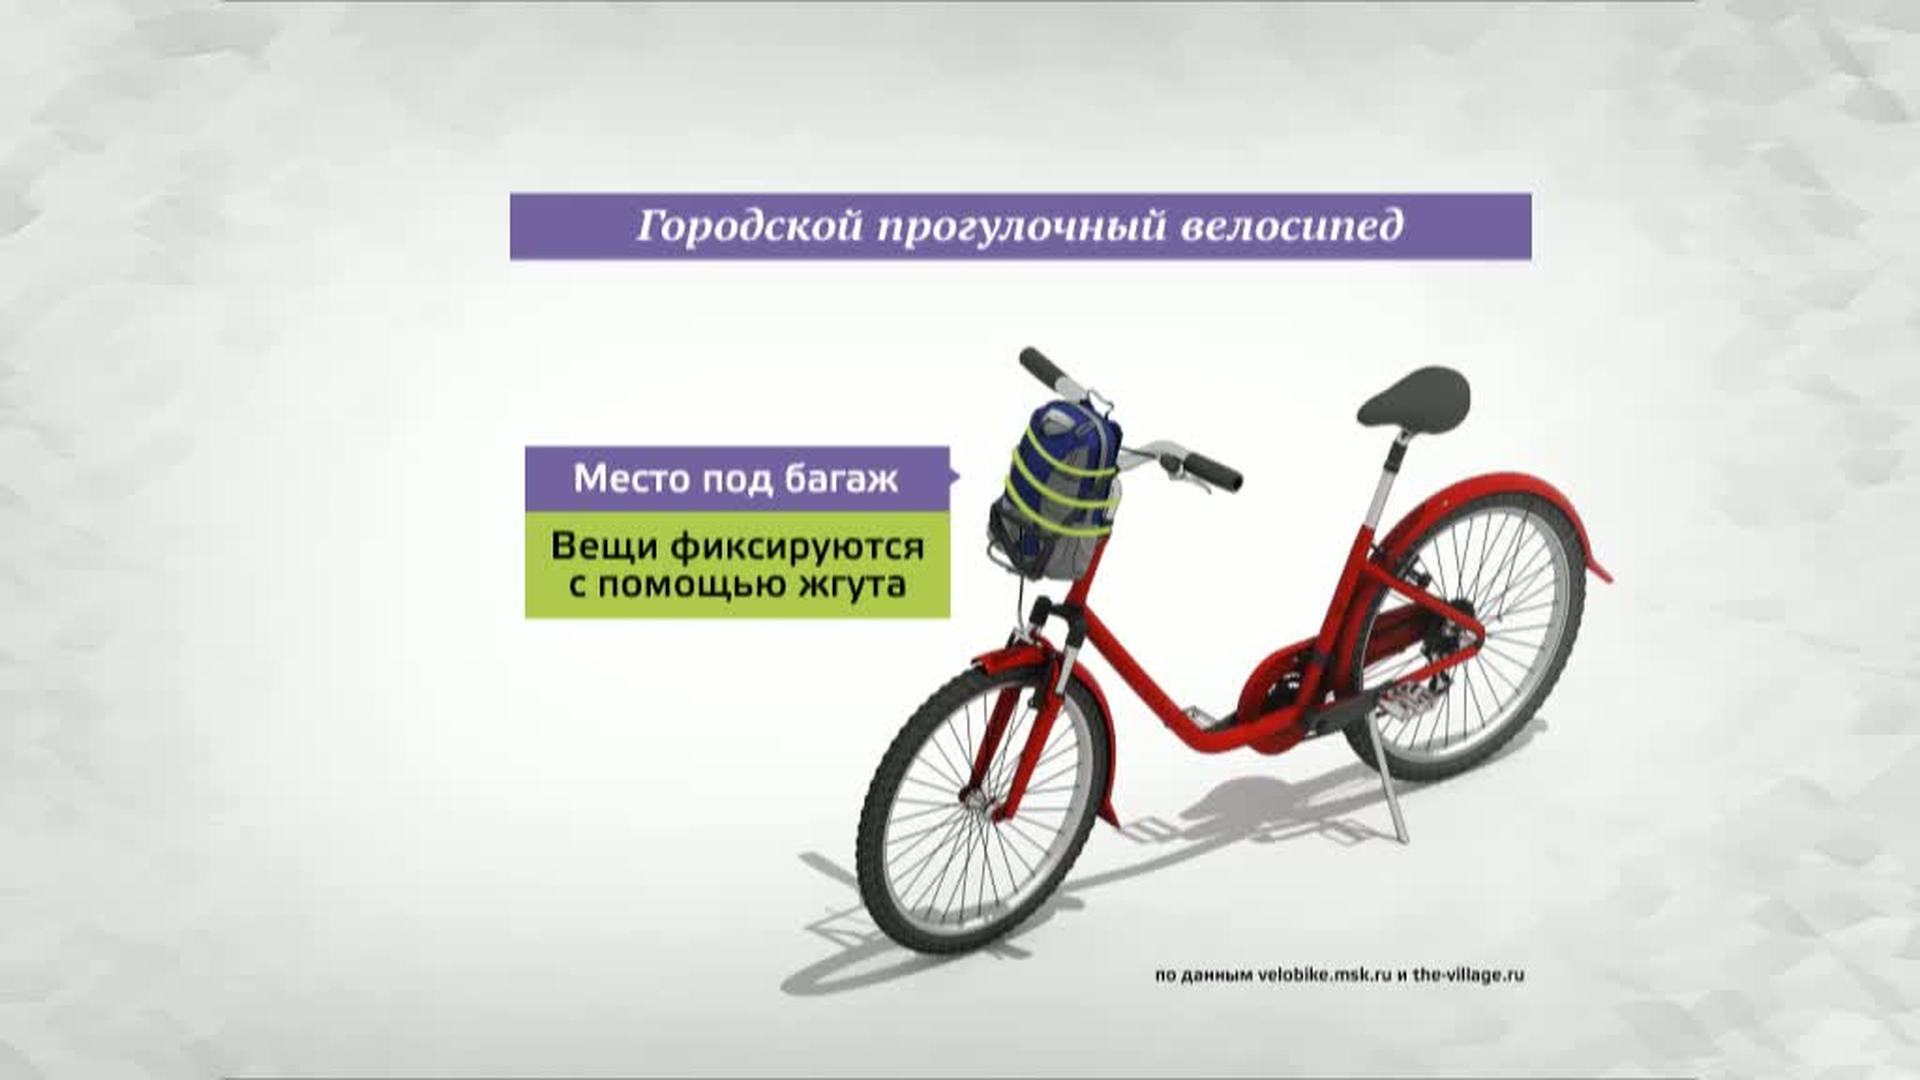 Велопрокат в москве втб. Велопрокат картинки. Велопрокат по живописным местам объявление шаблон.